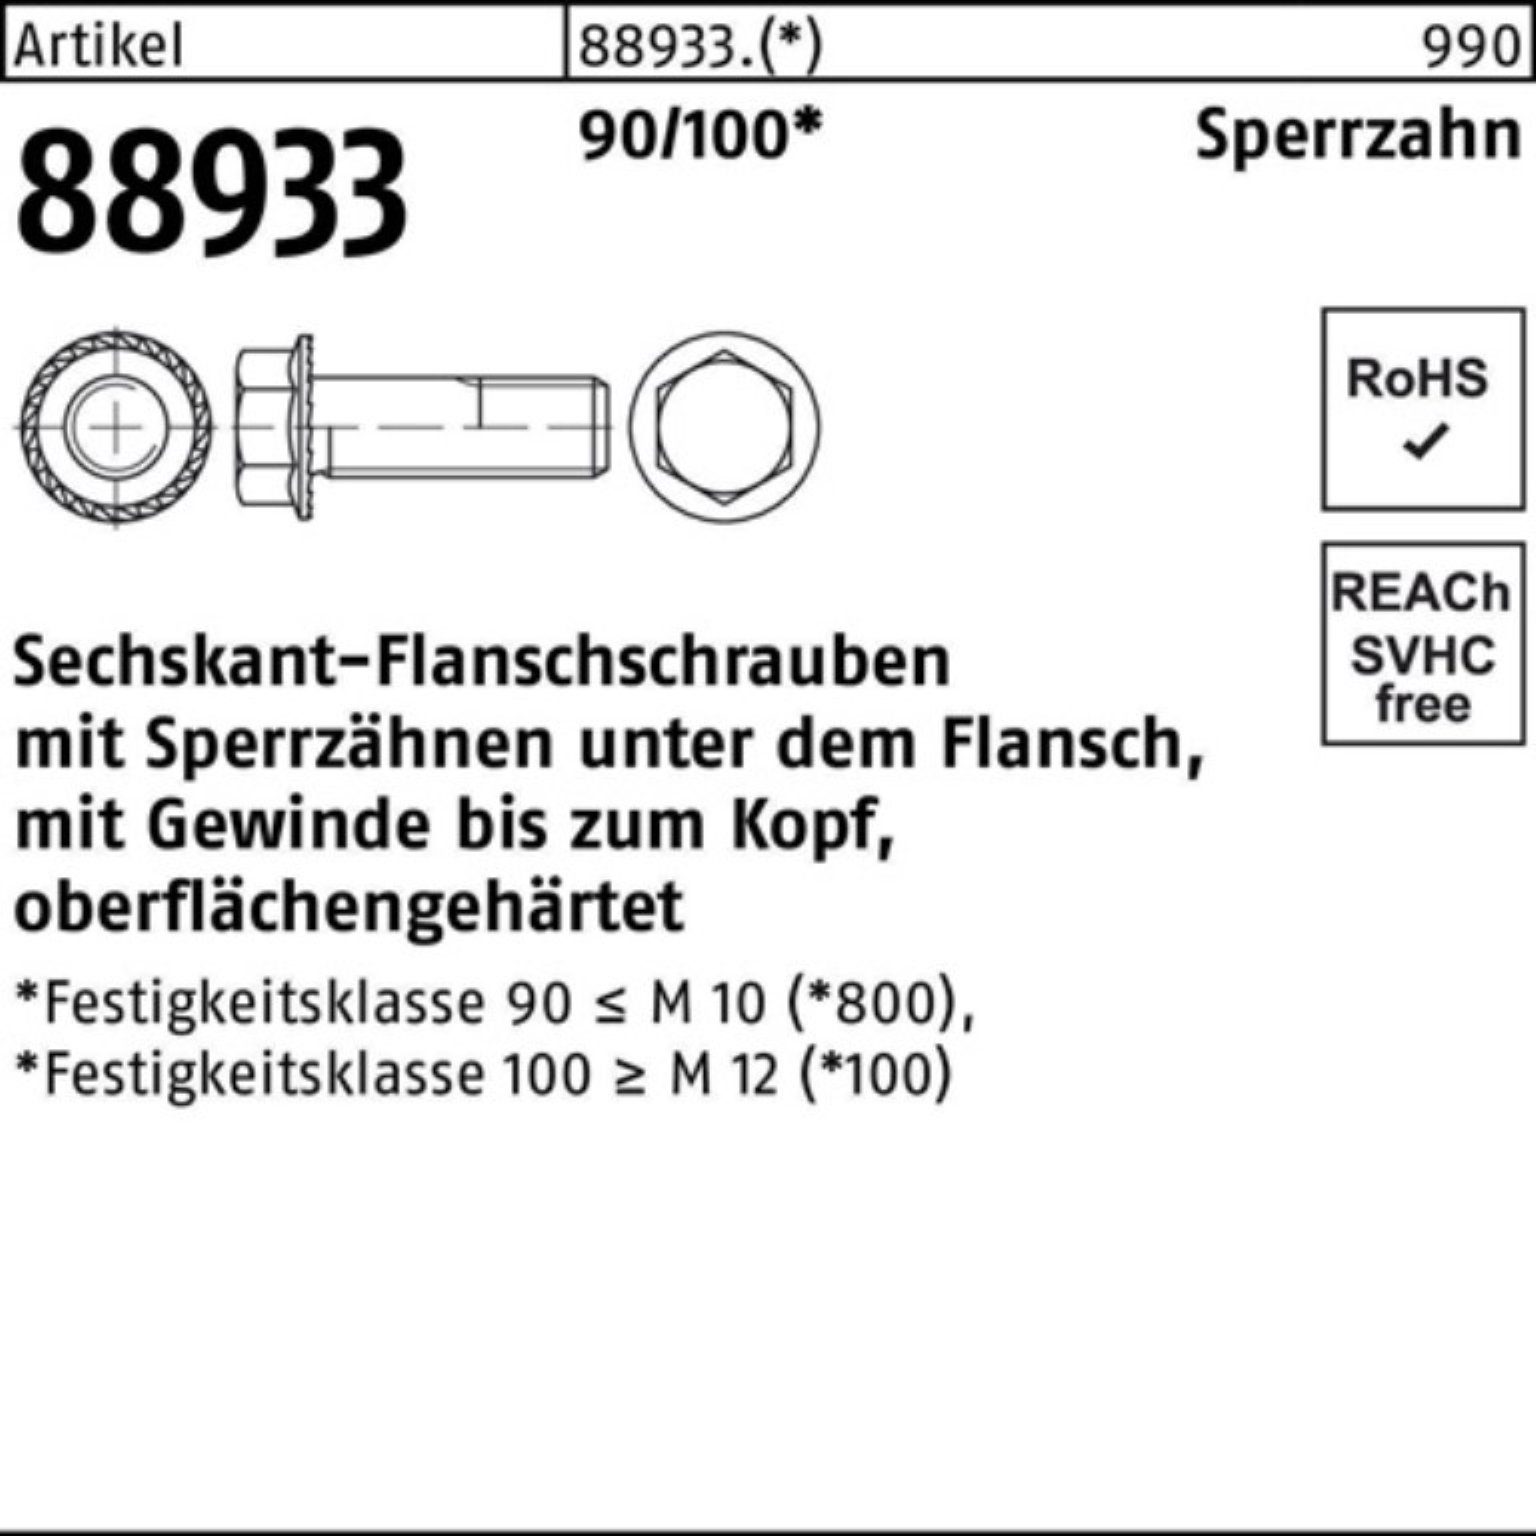 Reyher 500er R VG Sechskantflanschschraube 20 Pack M5x 90/100 5 Schraube Sperrz. 88933